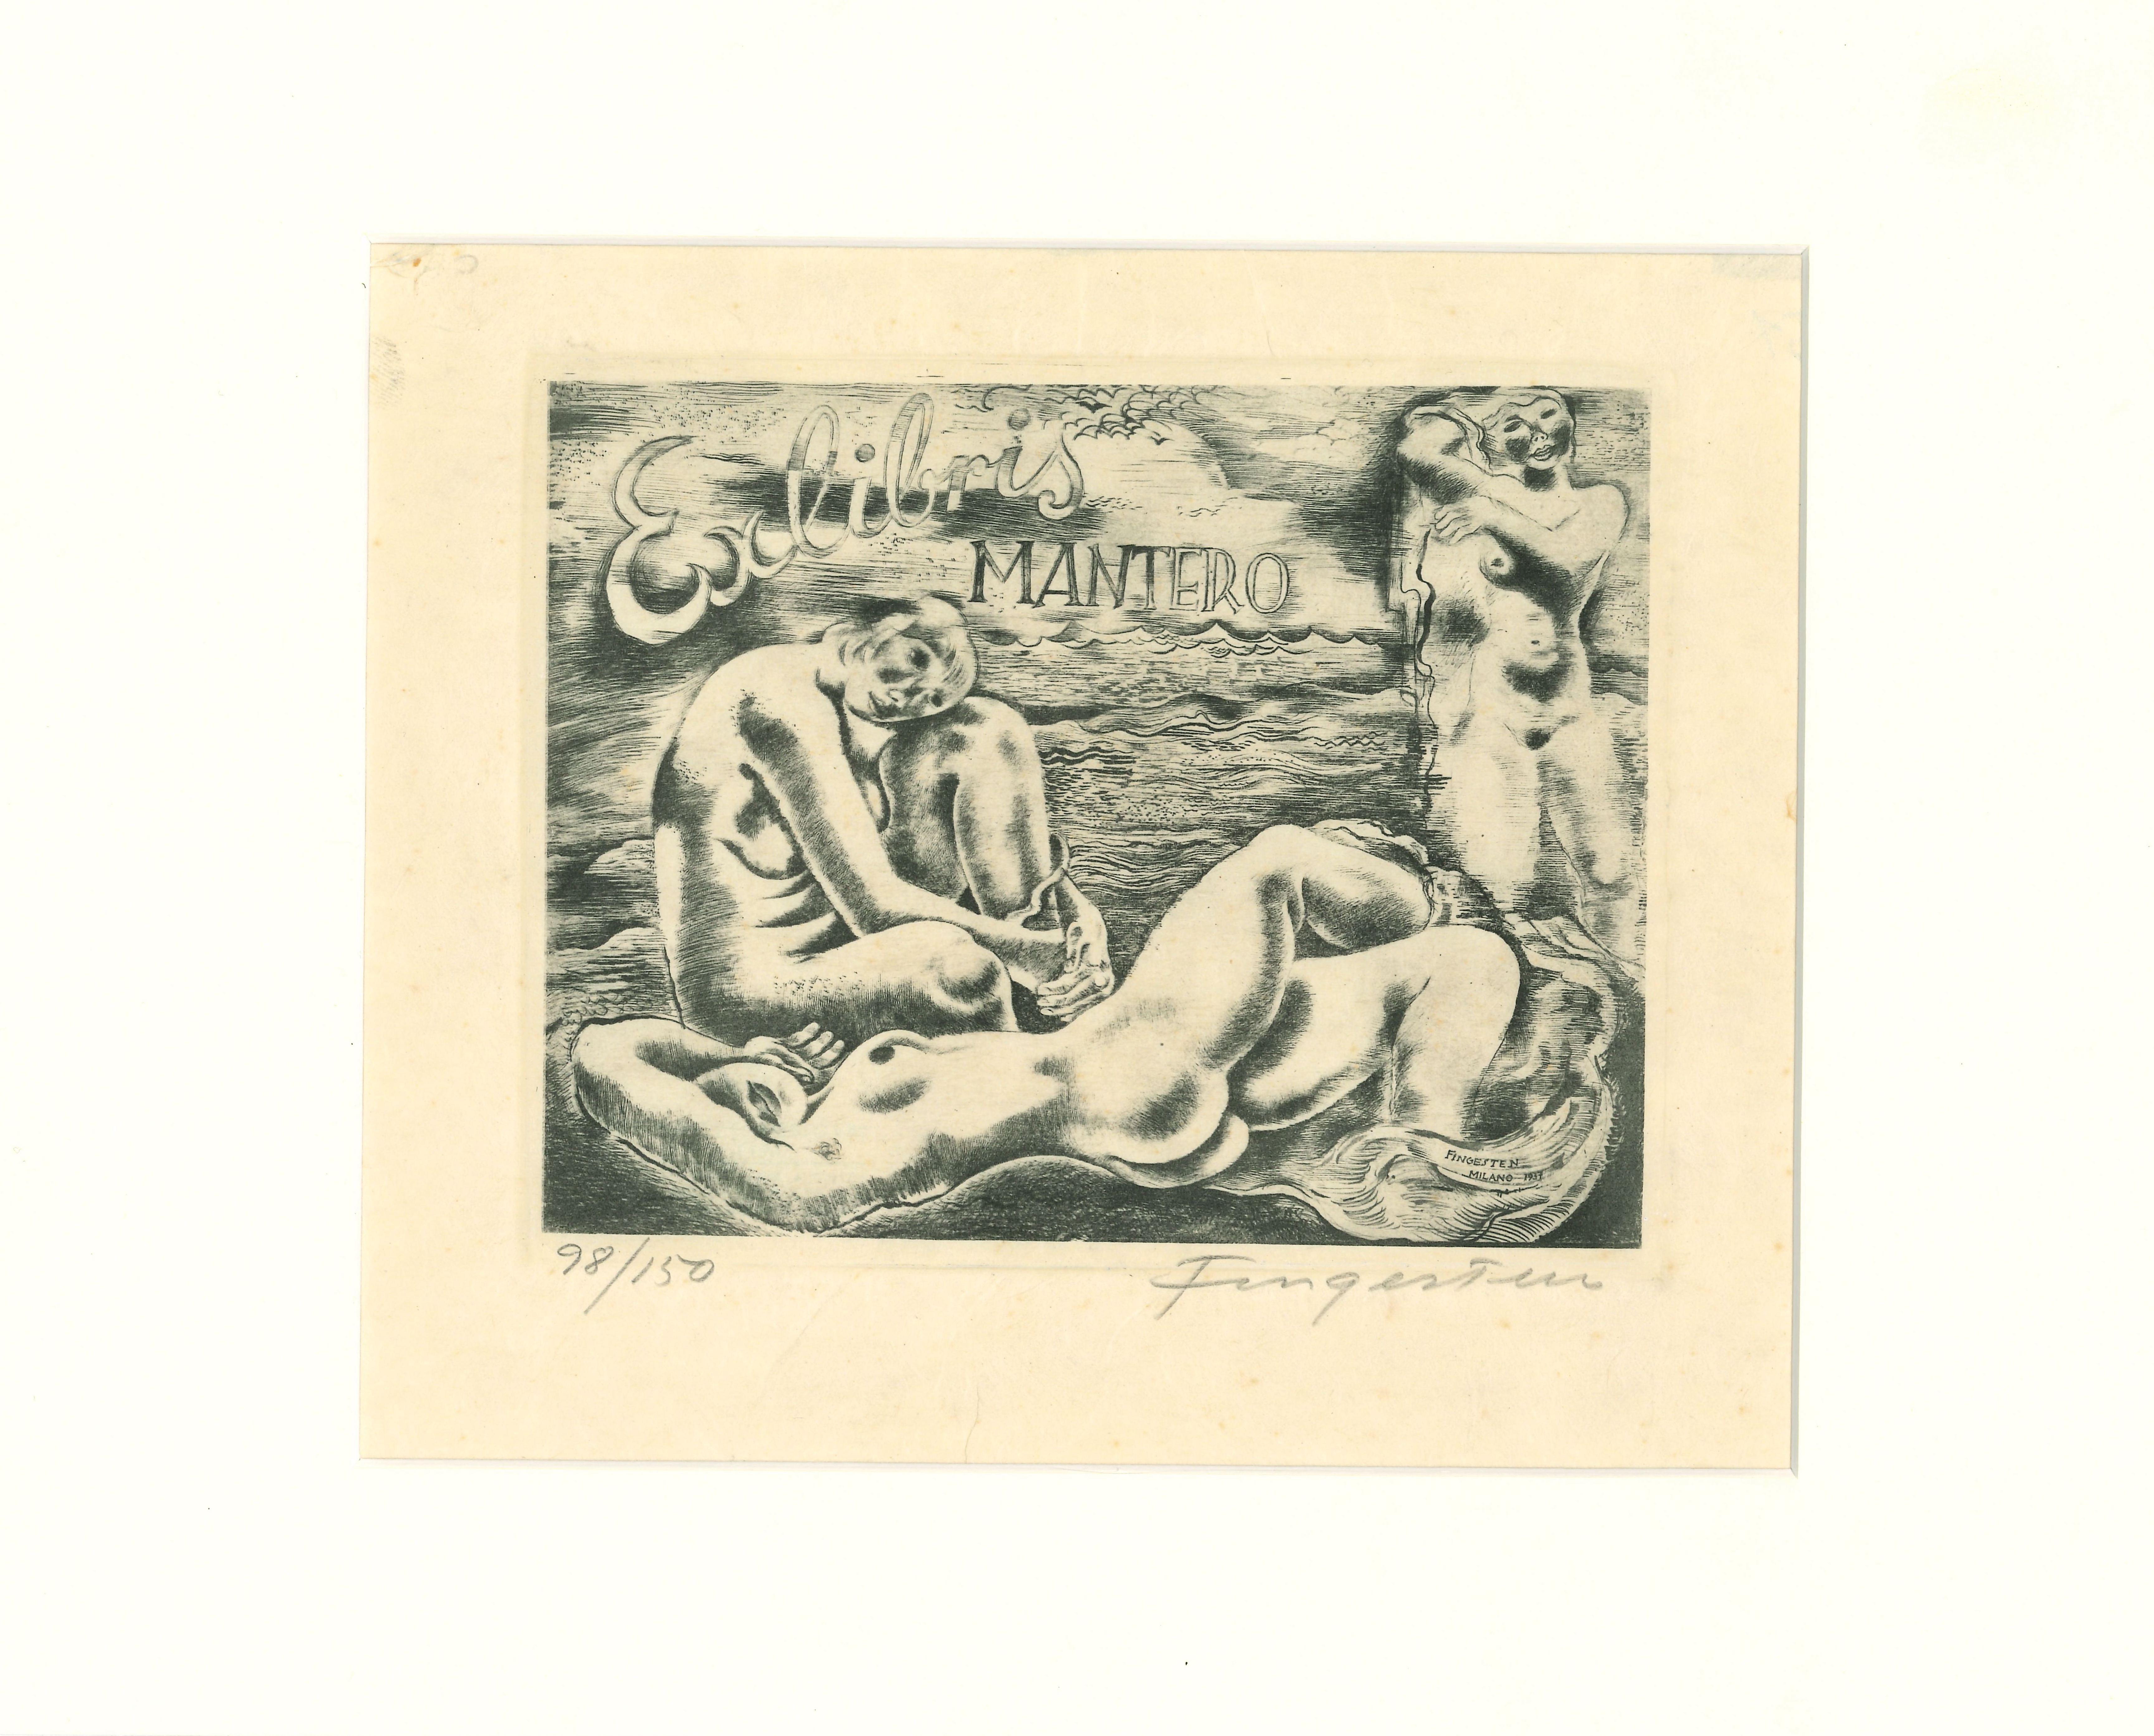 Ex Libris Mantero - Original Etching by M. Fingesten - 1930s - Print by Michel Fingesten